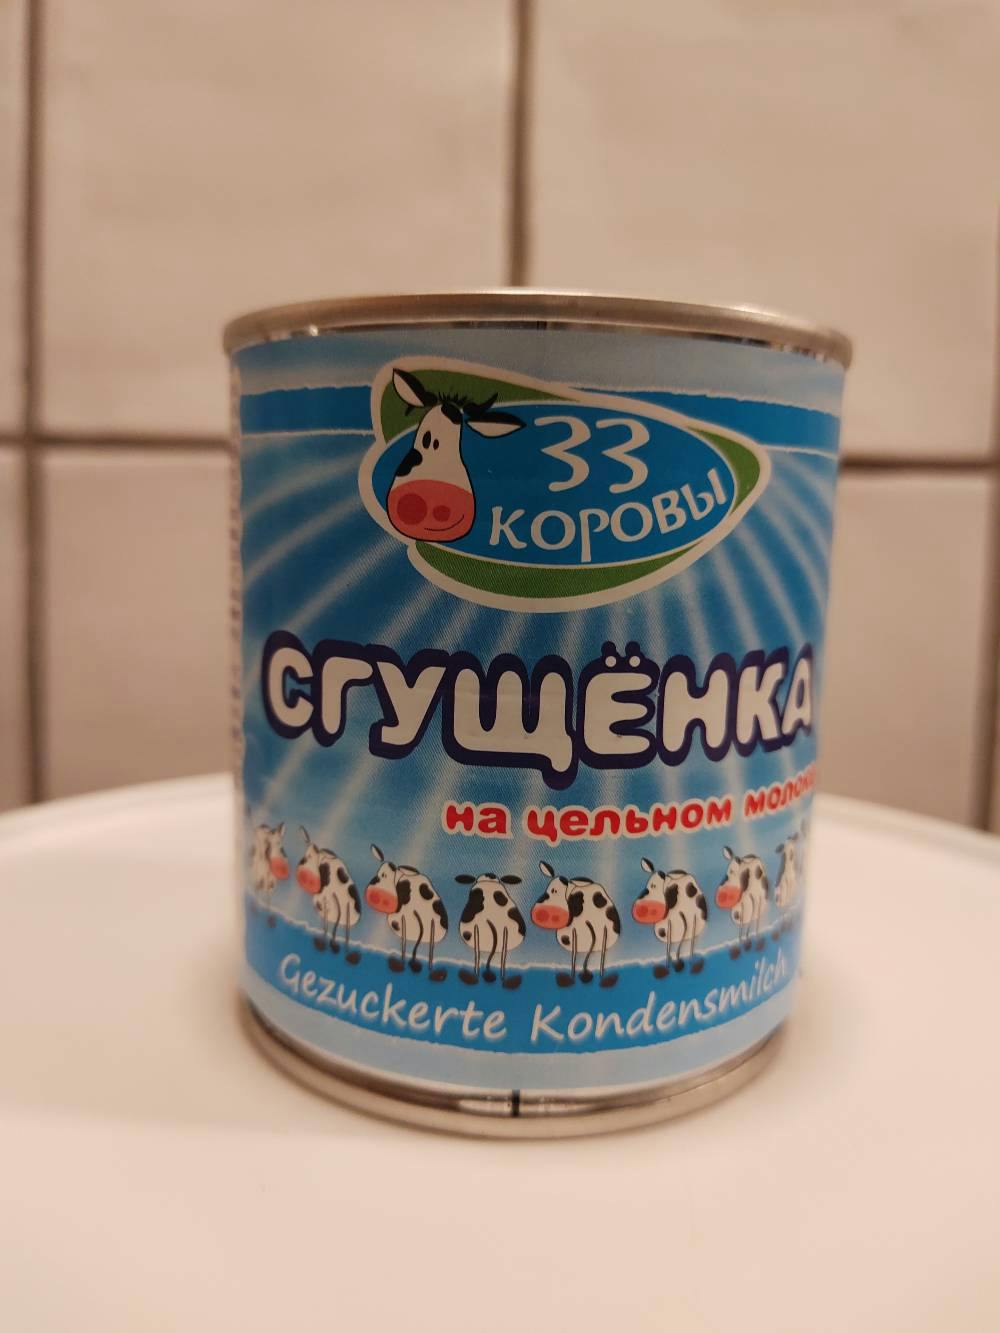 Søtet kondensert melk, Siberia group